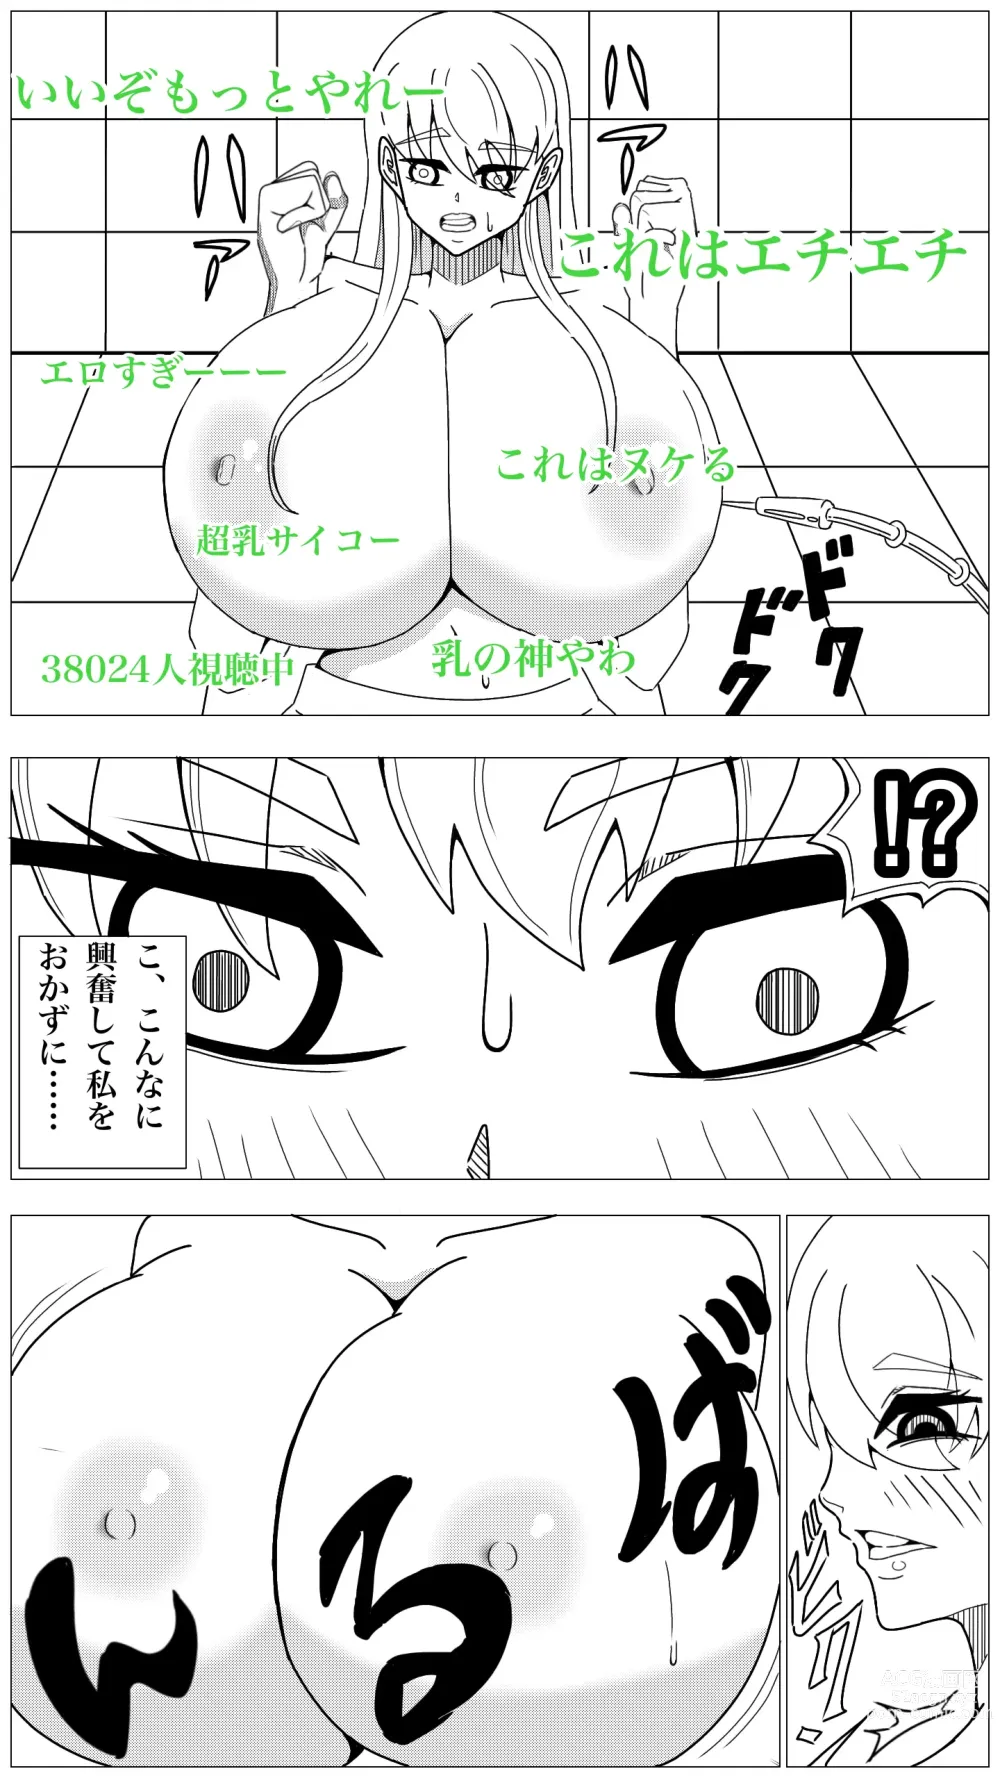 Page 8 of doujinshi Oppai Shiisougemu